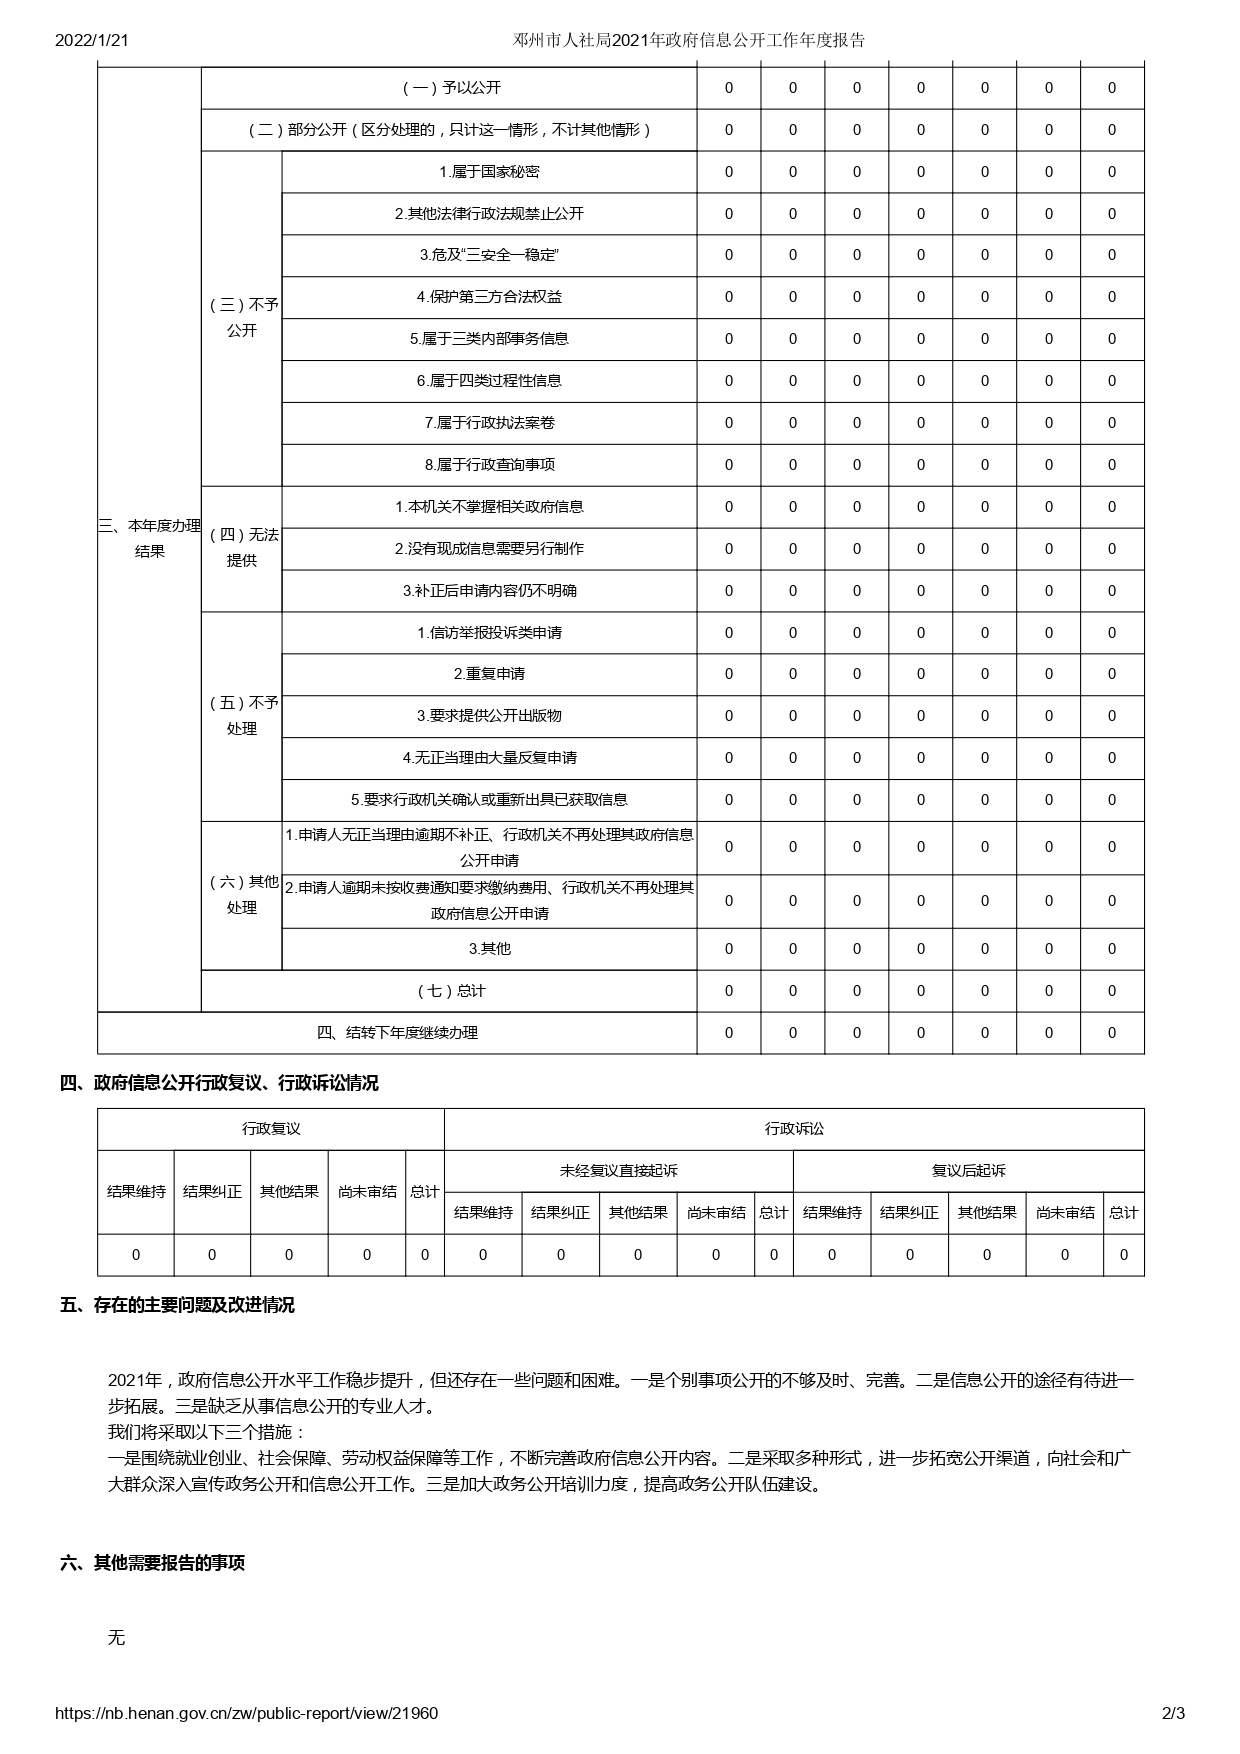 邓州市人社局2021年政府信息公开工作年度报告_page-0002.jpg